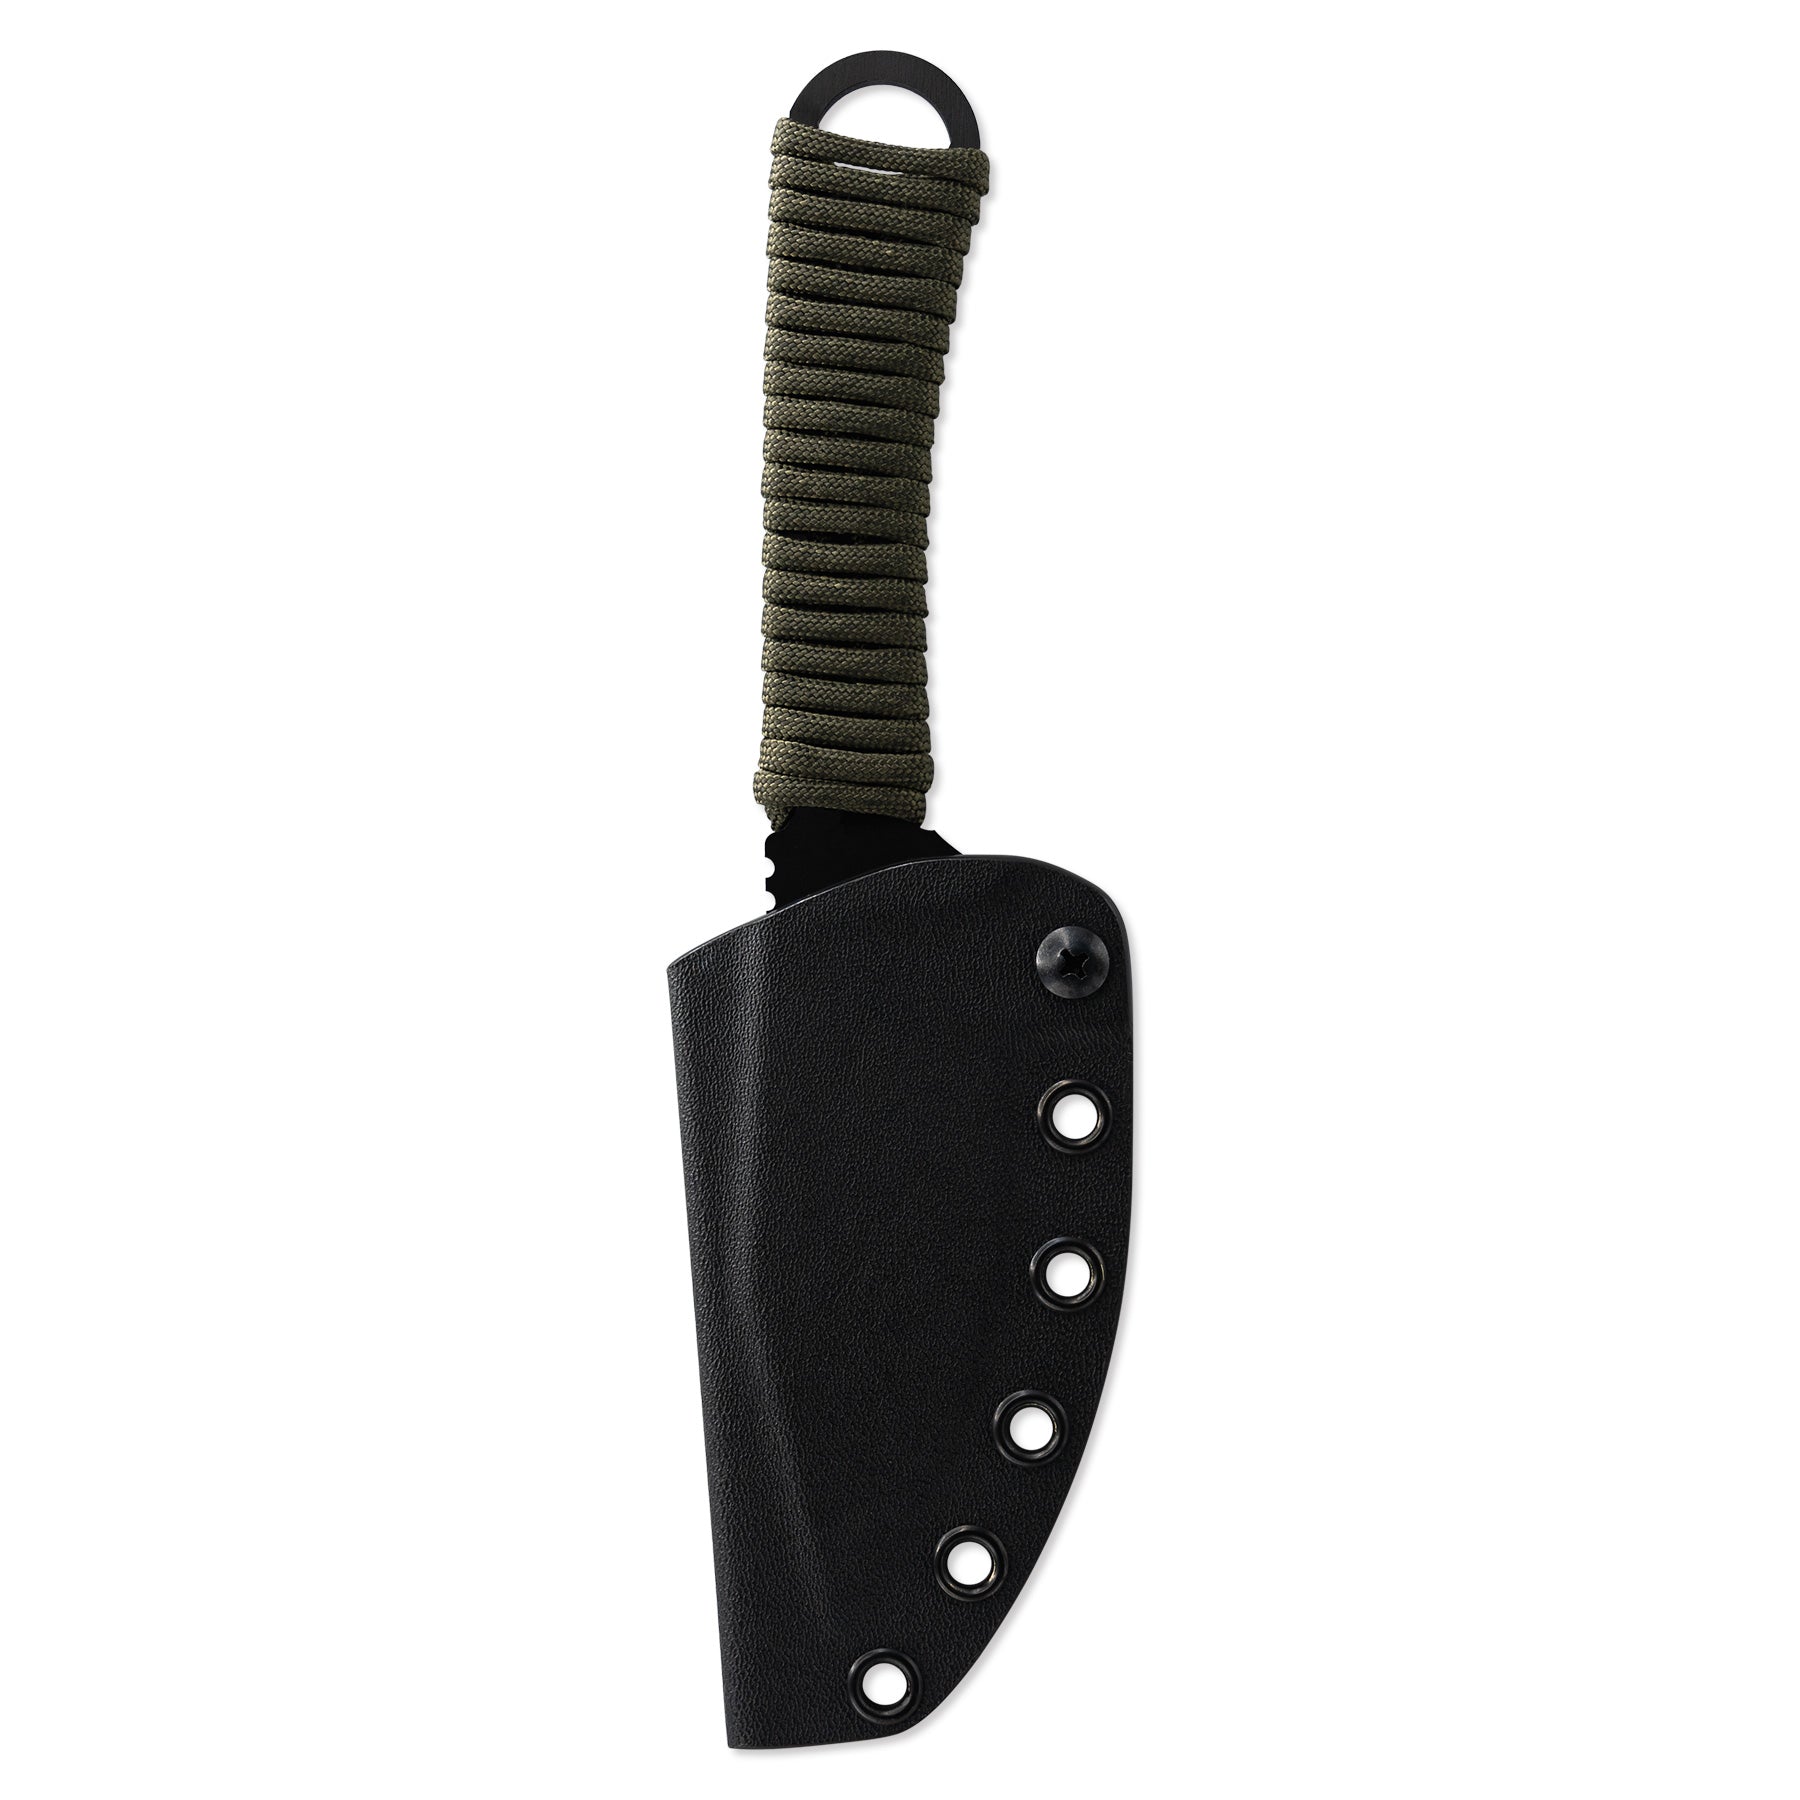 Merlin Gut Hook Knife with Sheath - Green - FORLOH